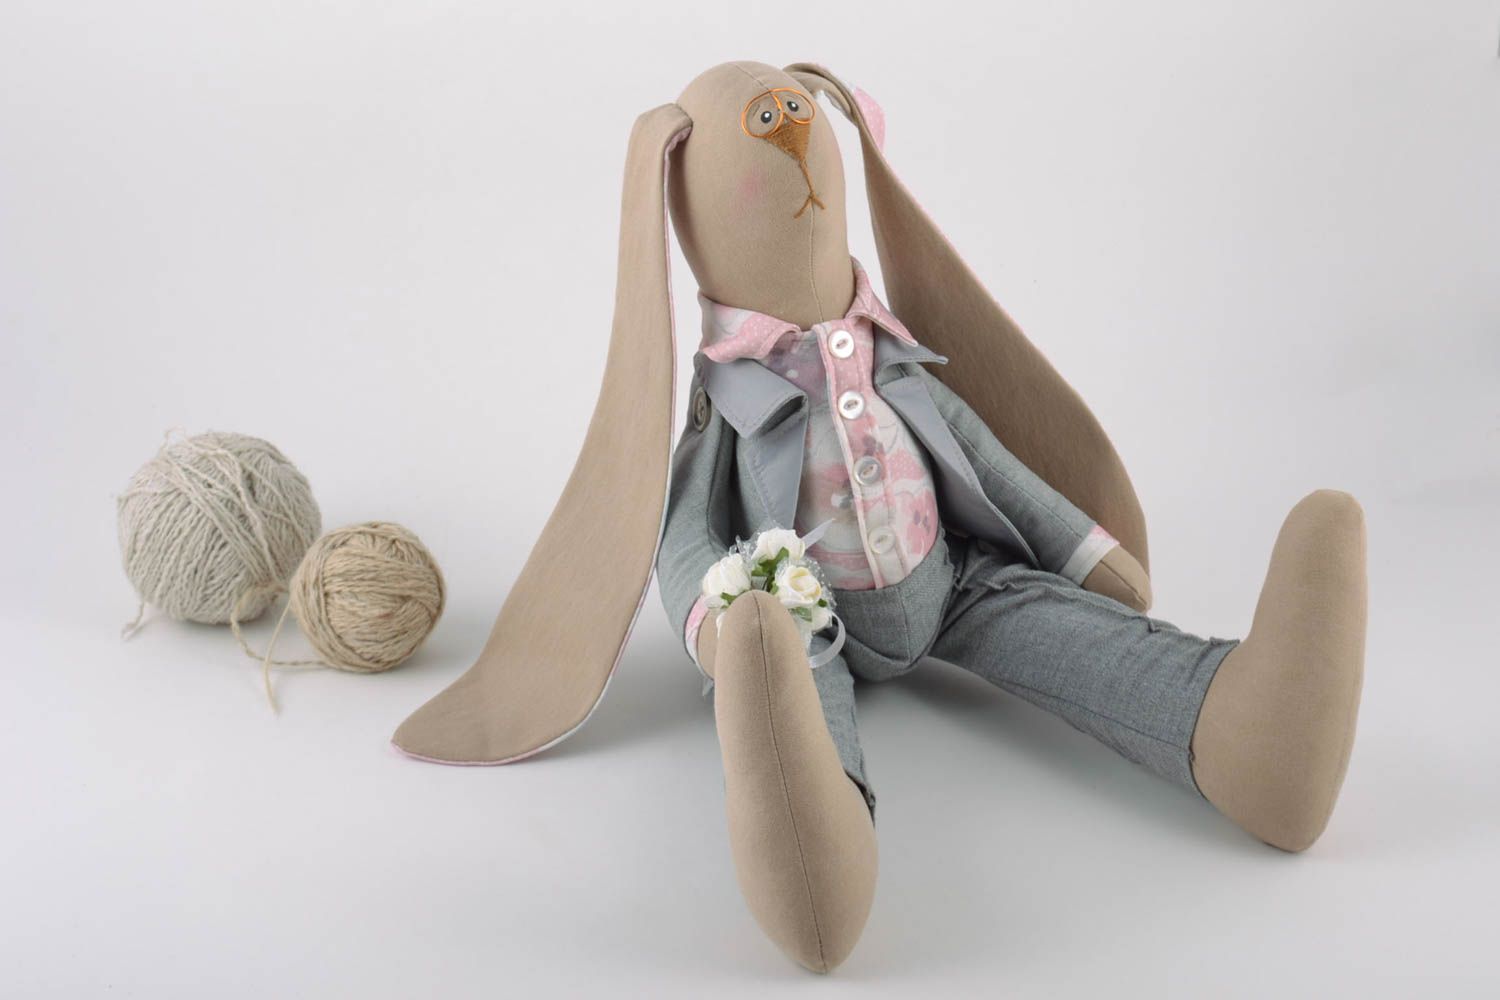 Мягкая игрушка текстильная ручной работы авторская красивая зайчик жених фото 1